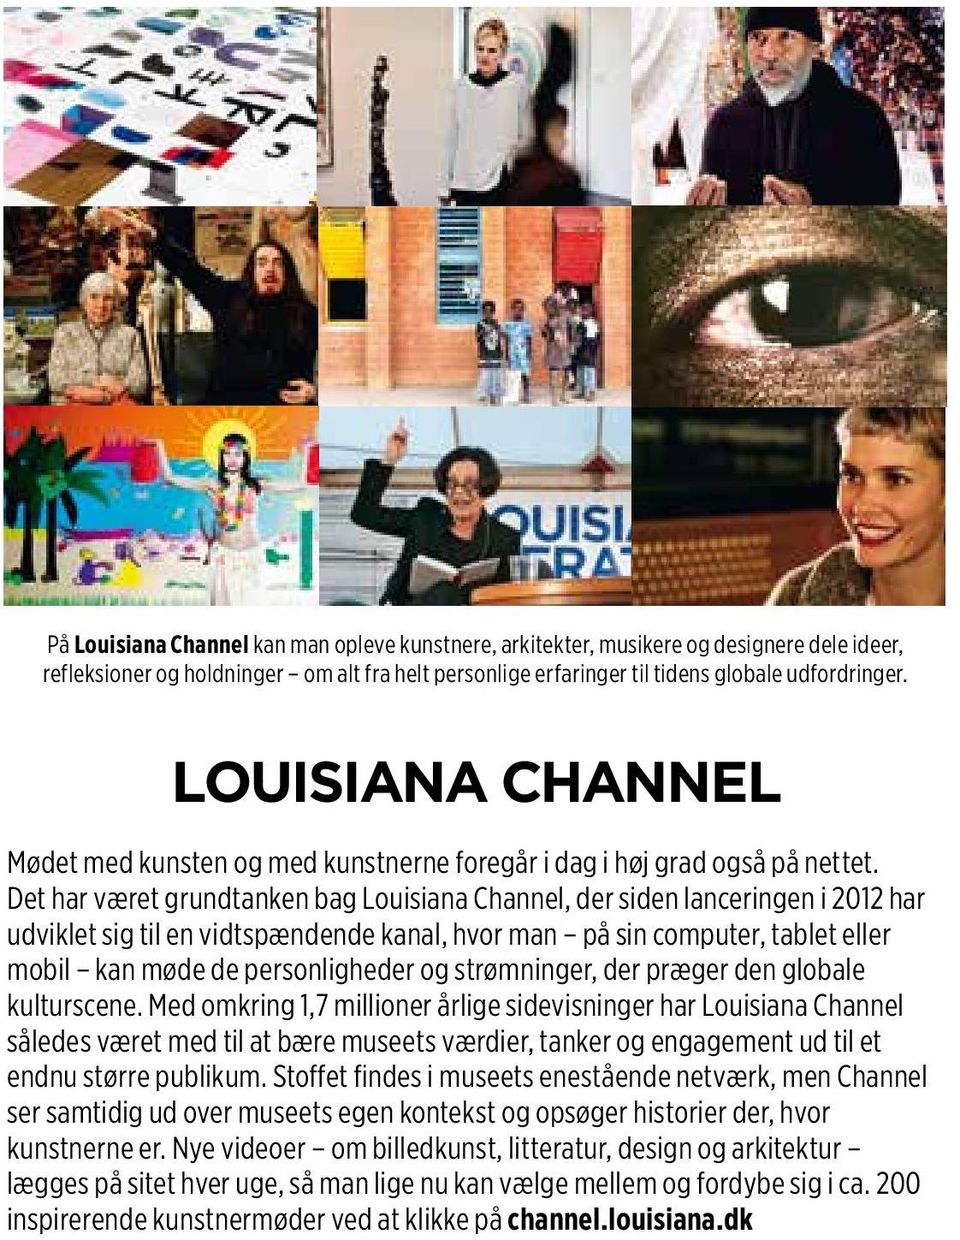 Det har været grundtanken bag Louisiana Channel, der siden lanceringen i 2012 har udviklet sig til en vidtspændende kanal, hvor man på sin computer, tablet eller mobil kan møde de personligheder og